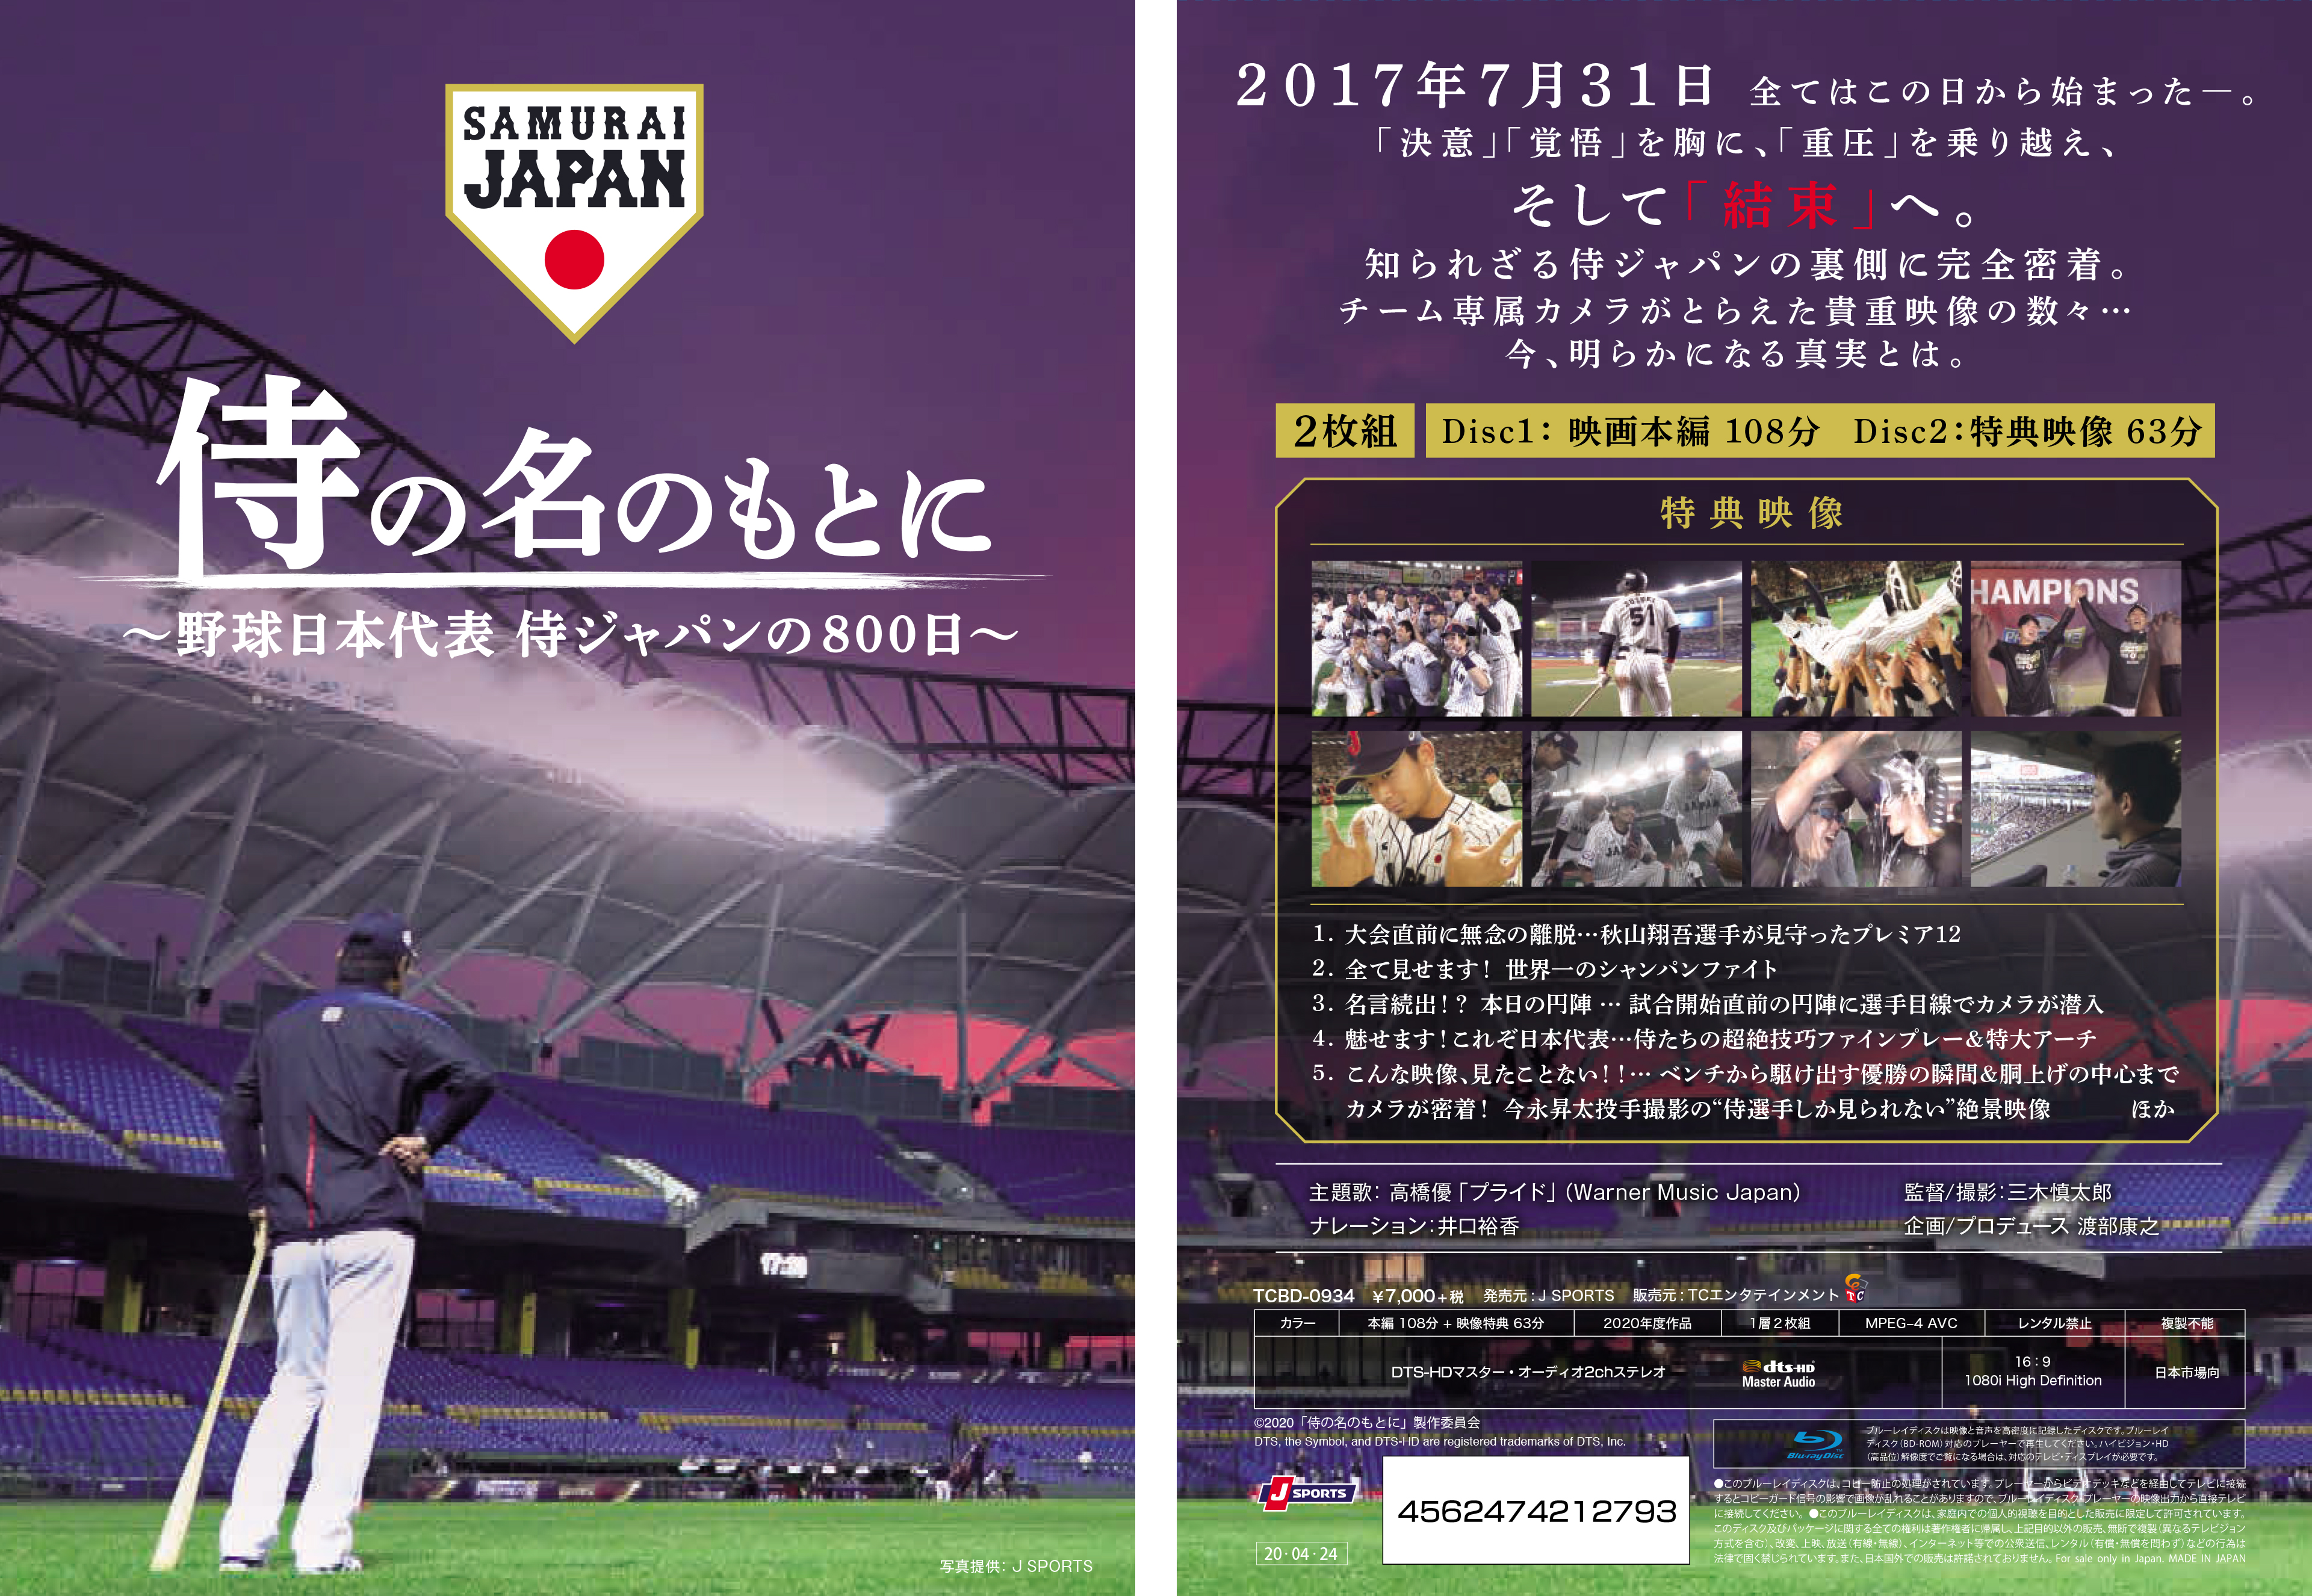 映画 侍の名のもとに 野球日本代表 侍ジャパンの800日 Dvd Blu Rayを4月24日発売決定 J Sportsのプレスリリース